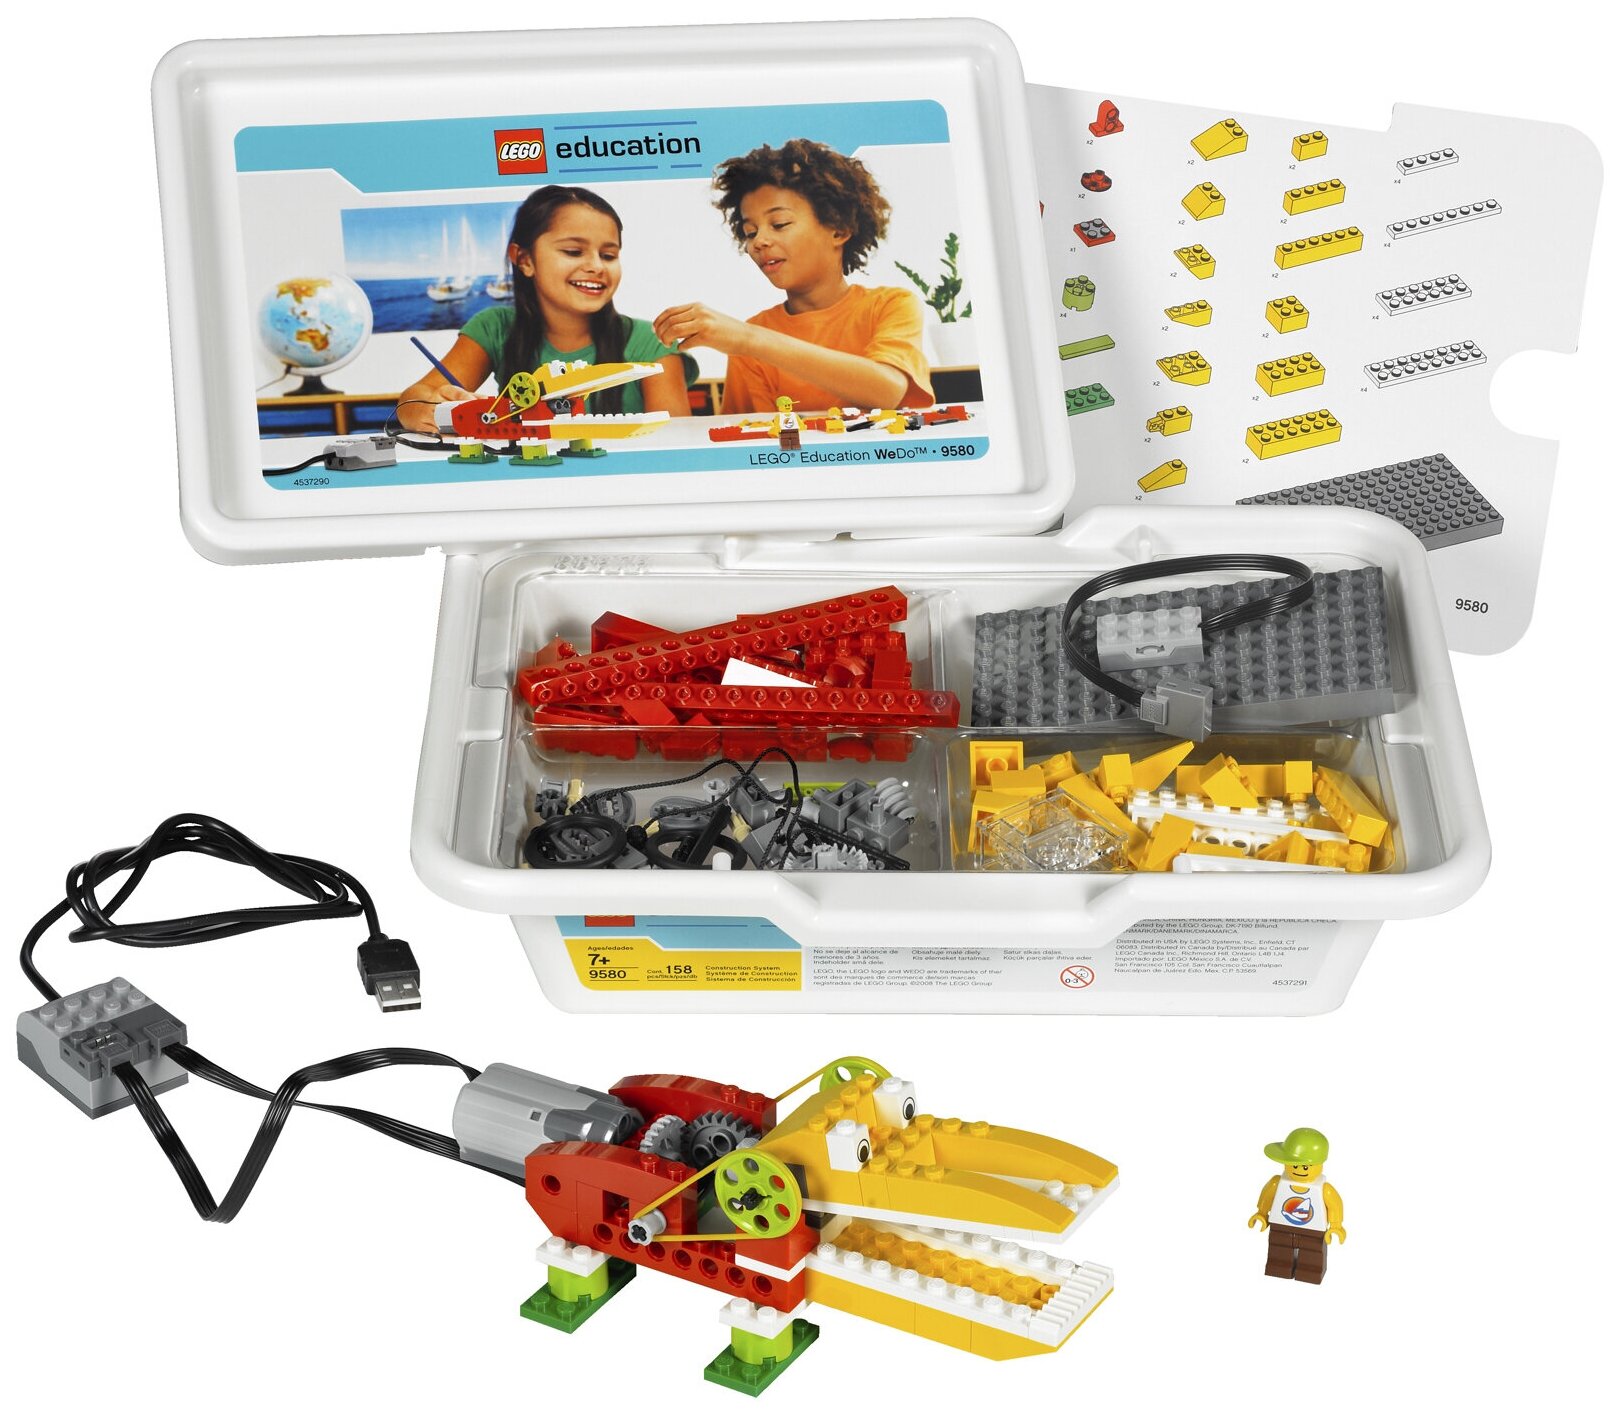 LEGO 9580 Базовый набор WeDo + 2000097 Программное обеспечение LEGO WeDo v.1.2